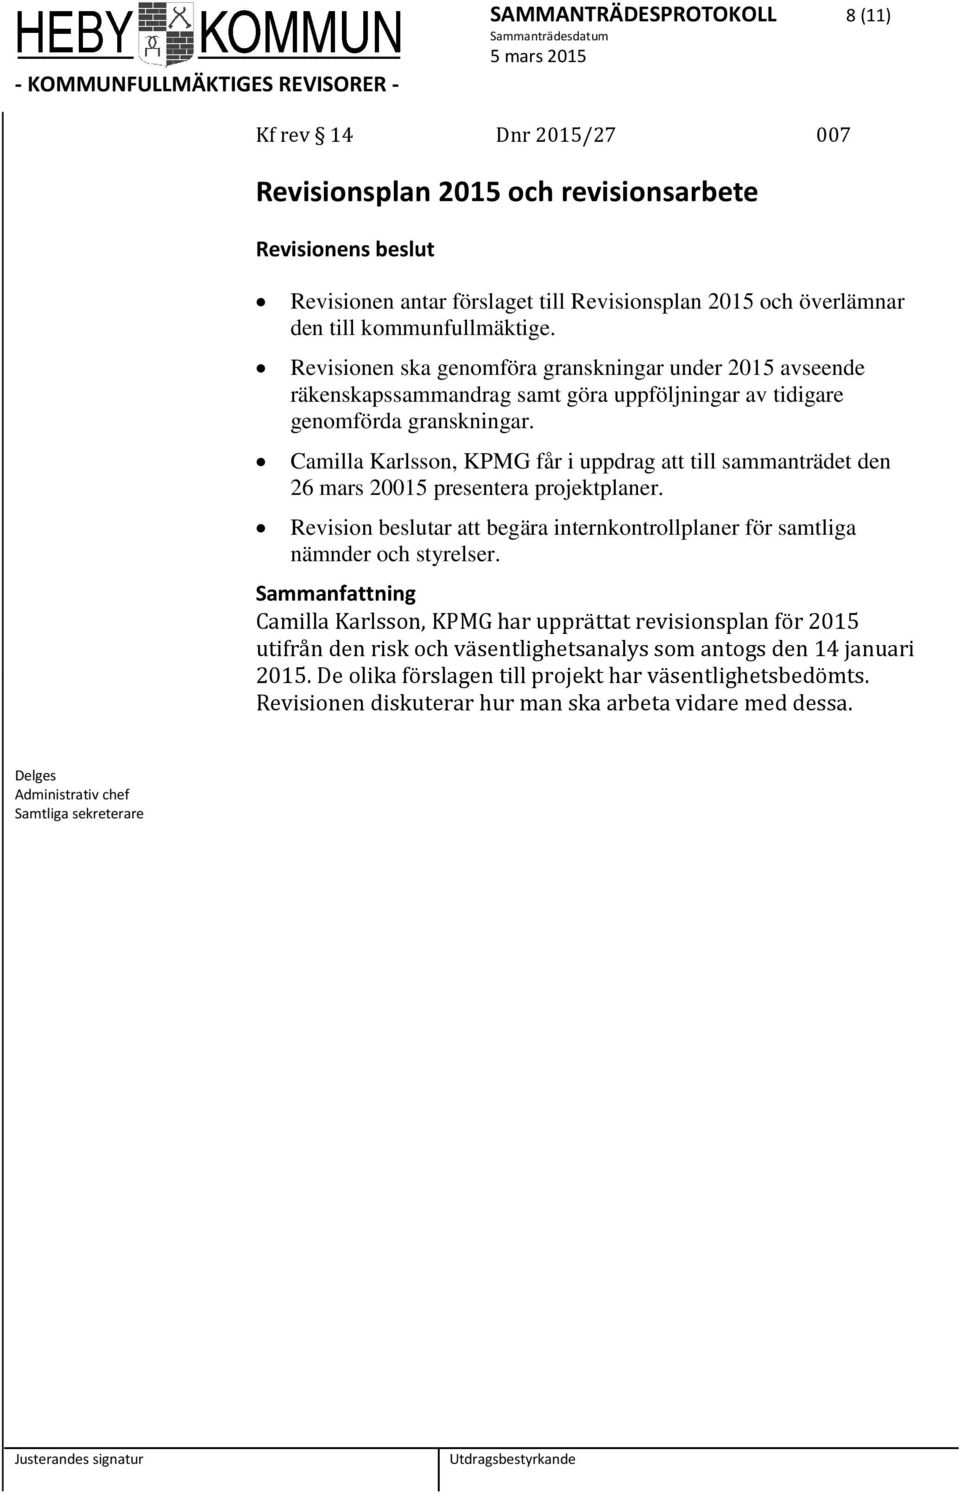 Camilla Karlsson, KPMG får i uppdrag att till sammanträdet den 26 mars 20015 presentera projektplaner. Revision beslutar att begära internkontrollplaner för samtliga nämnder och styrelser.